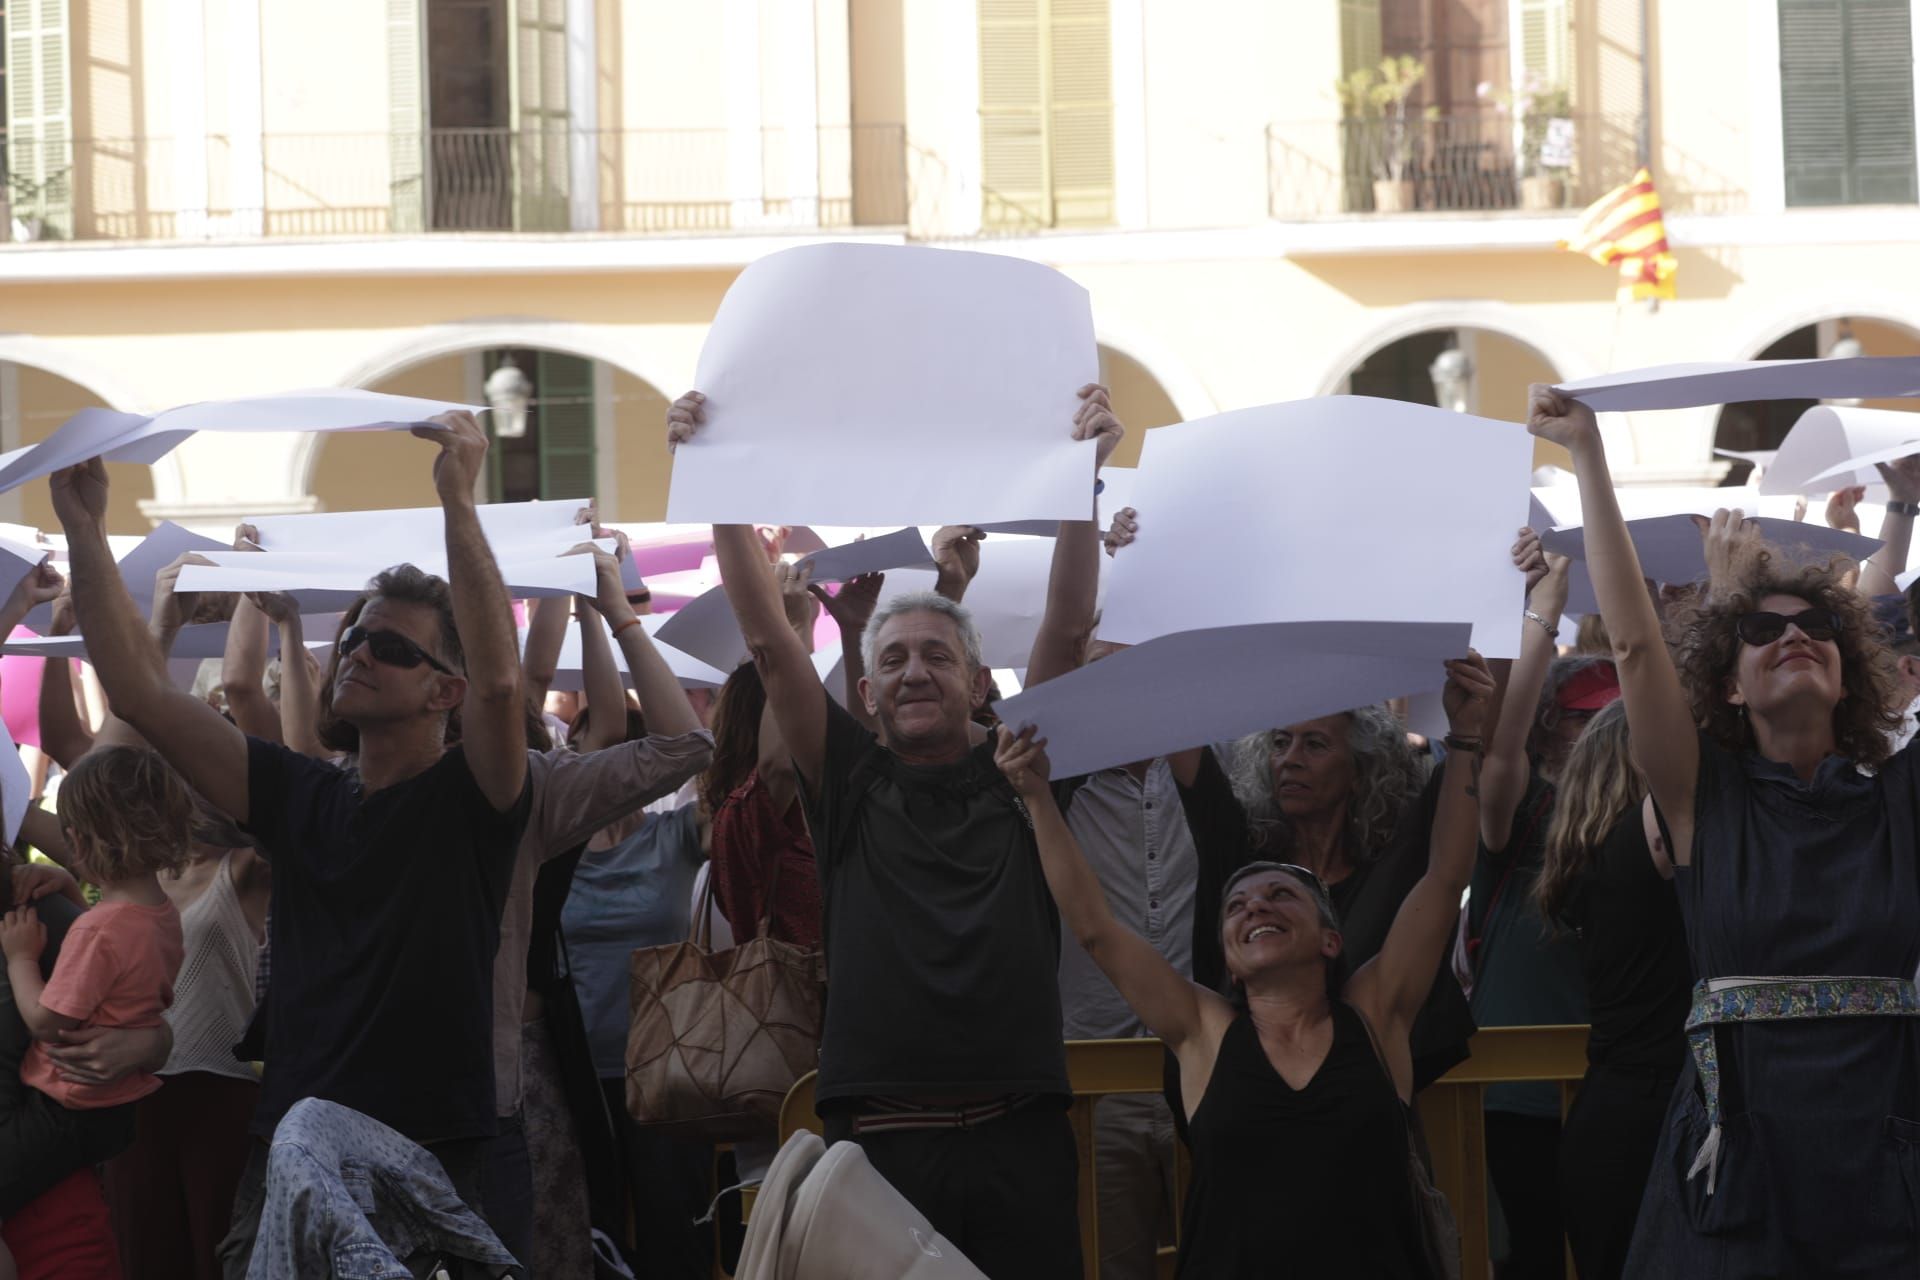 Un enorme mosaico humano pide justicia climática en la Plaza Mayor